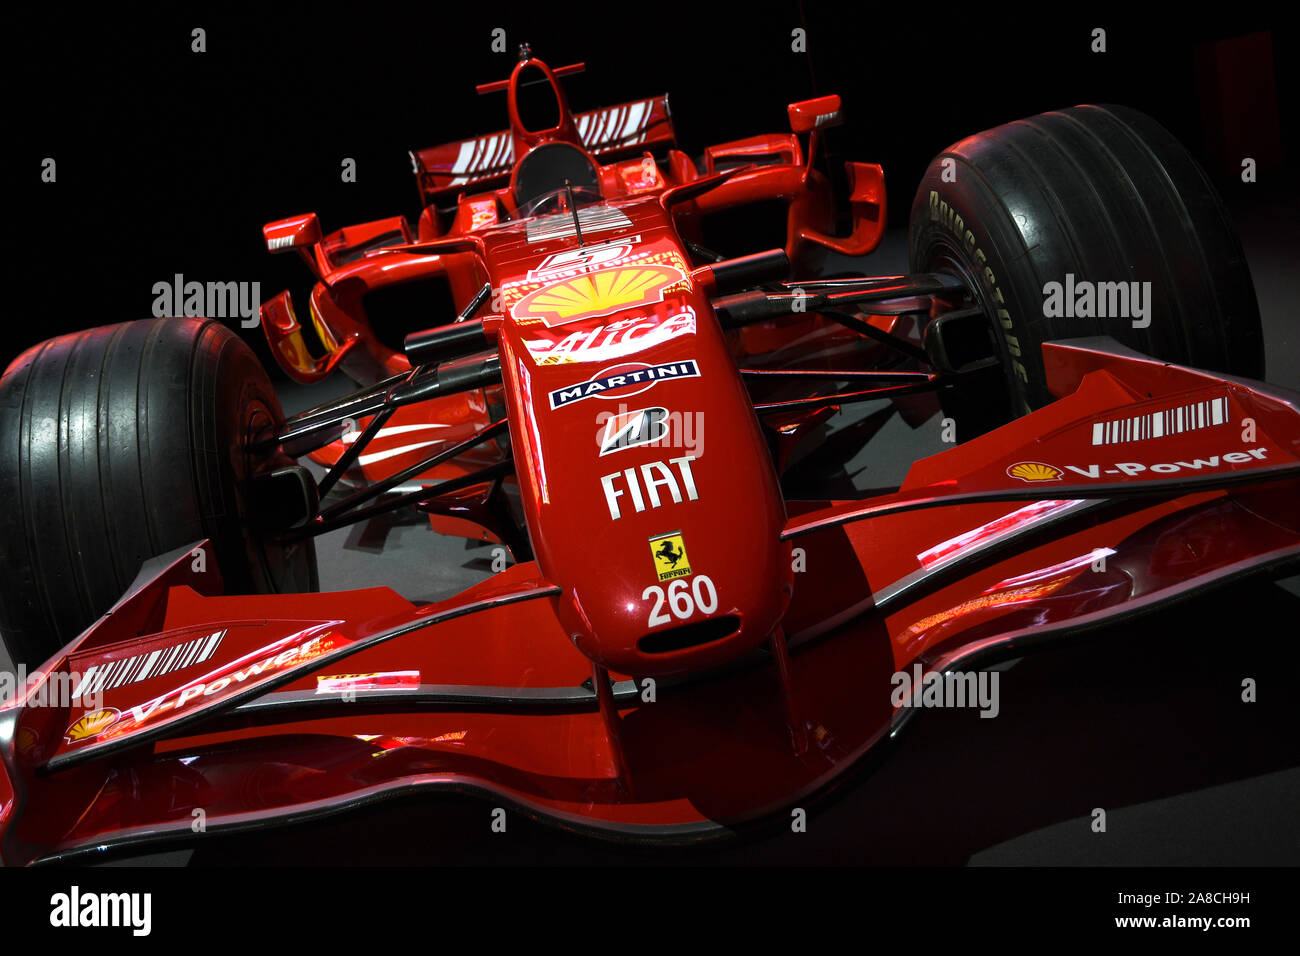 Sul circuito del Mugello, 25 Ottobre 2019: la Ferrari F1 modello F2007 anno 2007 ex campione del mondo Kimi Raikkonen sul display durante le Finali Mondiali Ferrari 2019. Foto Stock